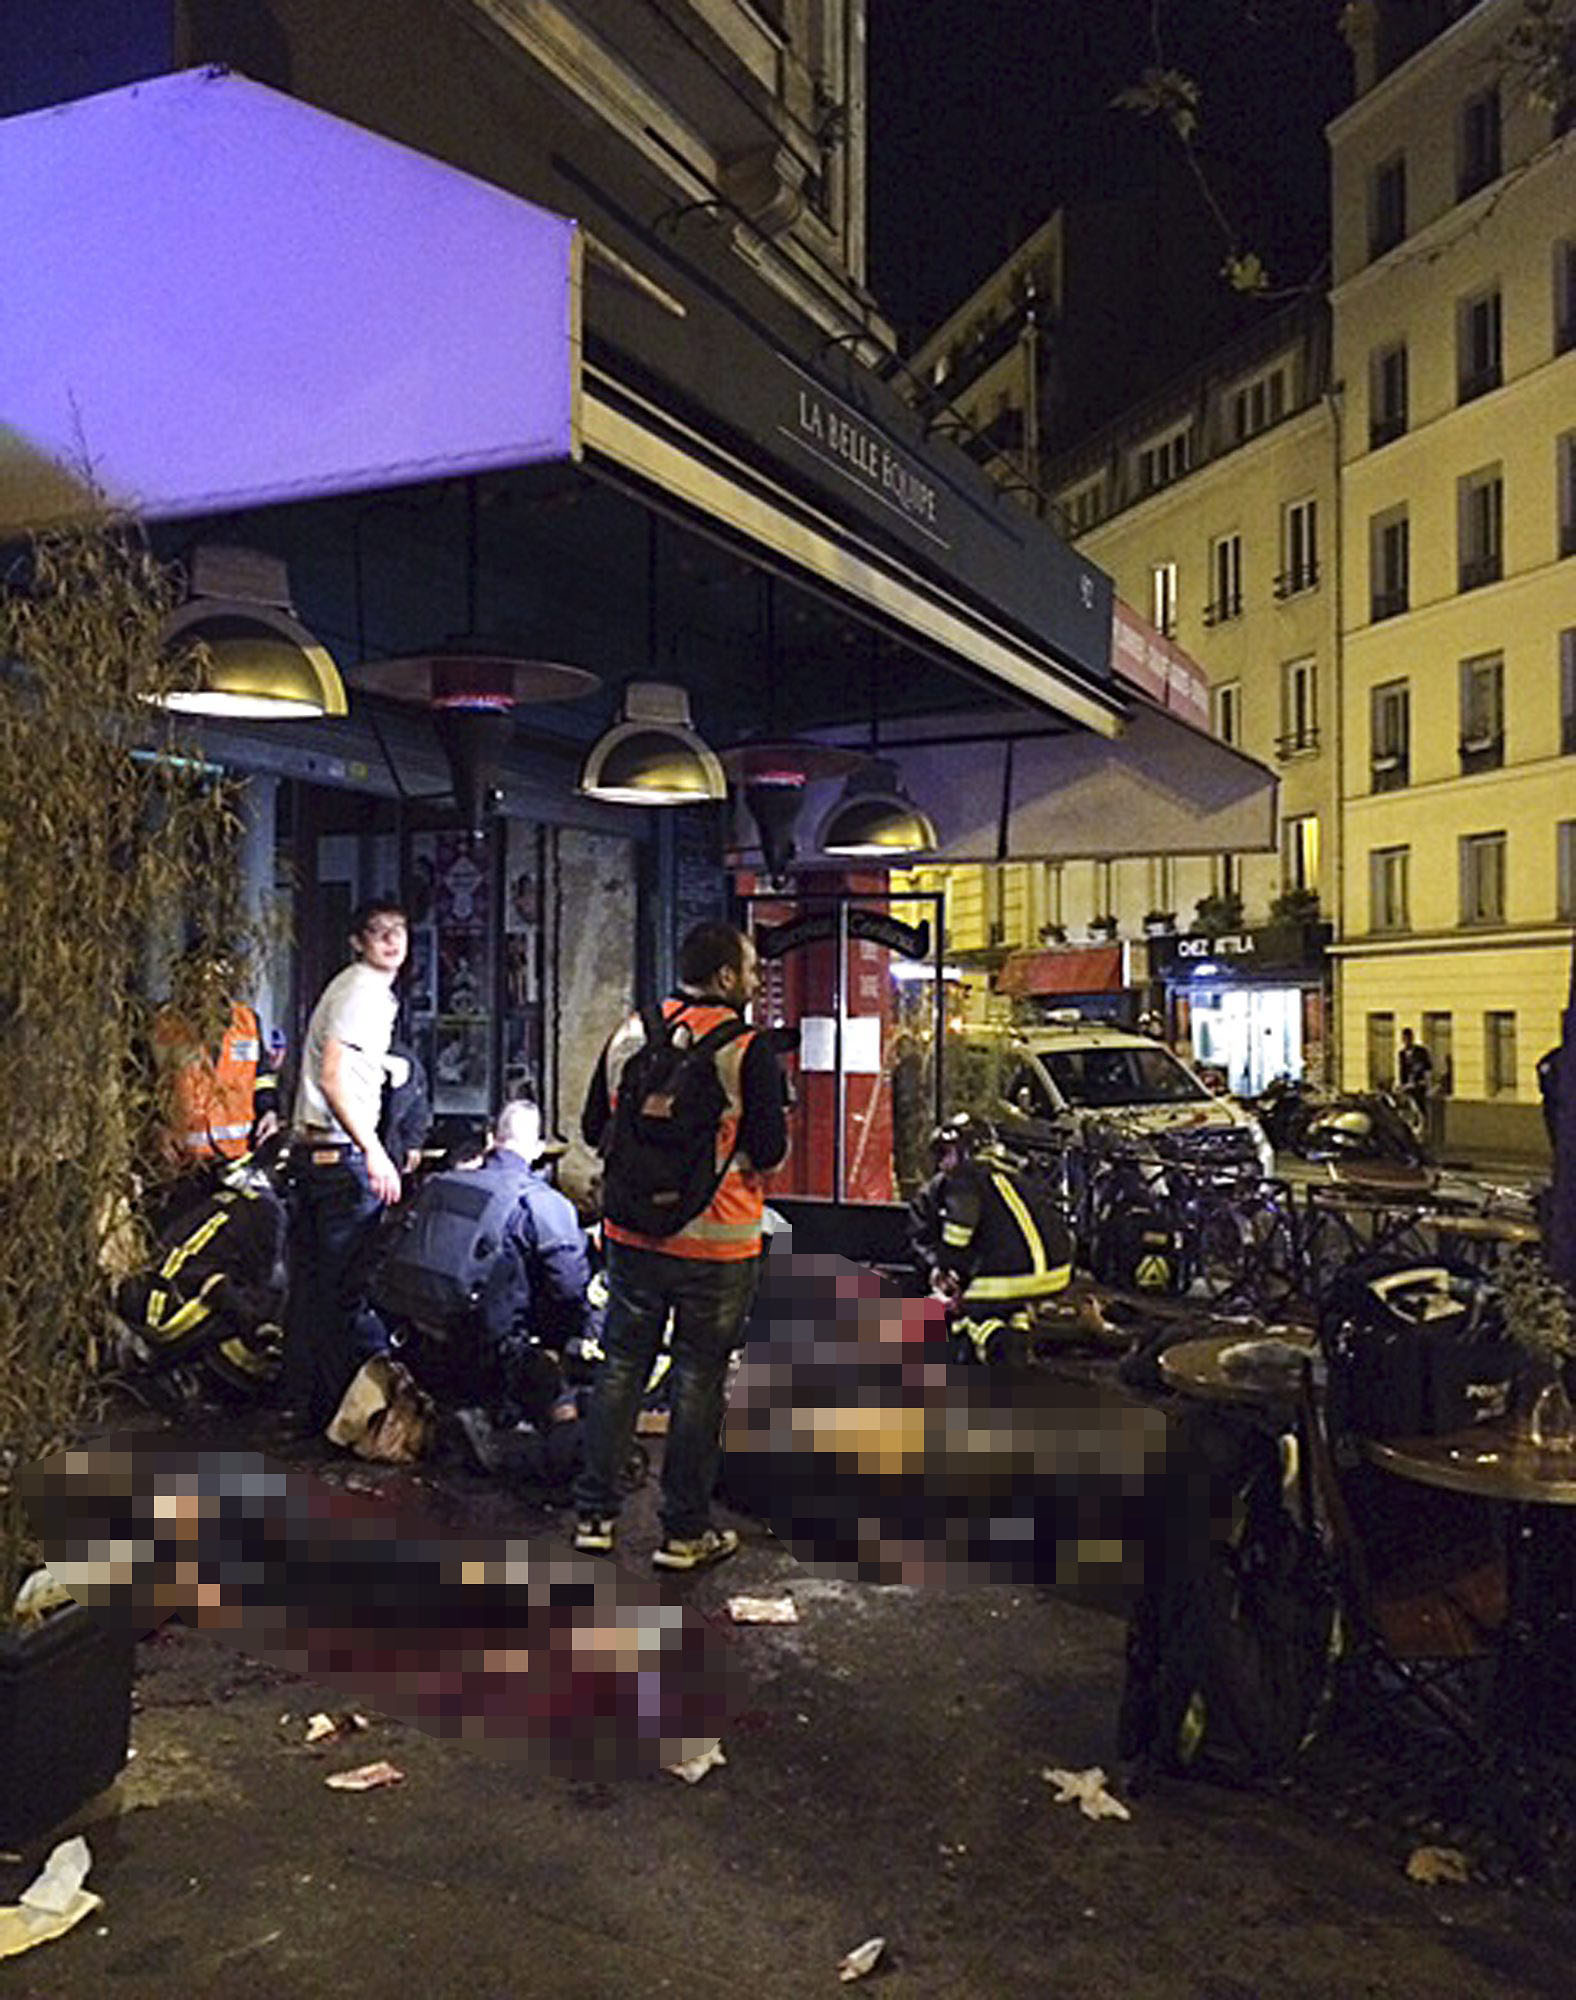 Holttestek az egyik lövöldözés helyszínén, a La Bell Equipe étterem előtt. Fotó: MTI/AP/Anne Sophie Chaisemartin)